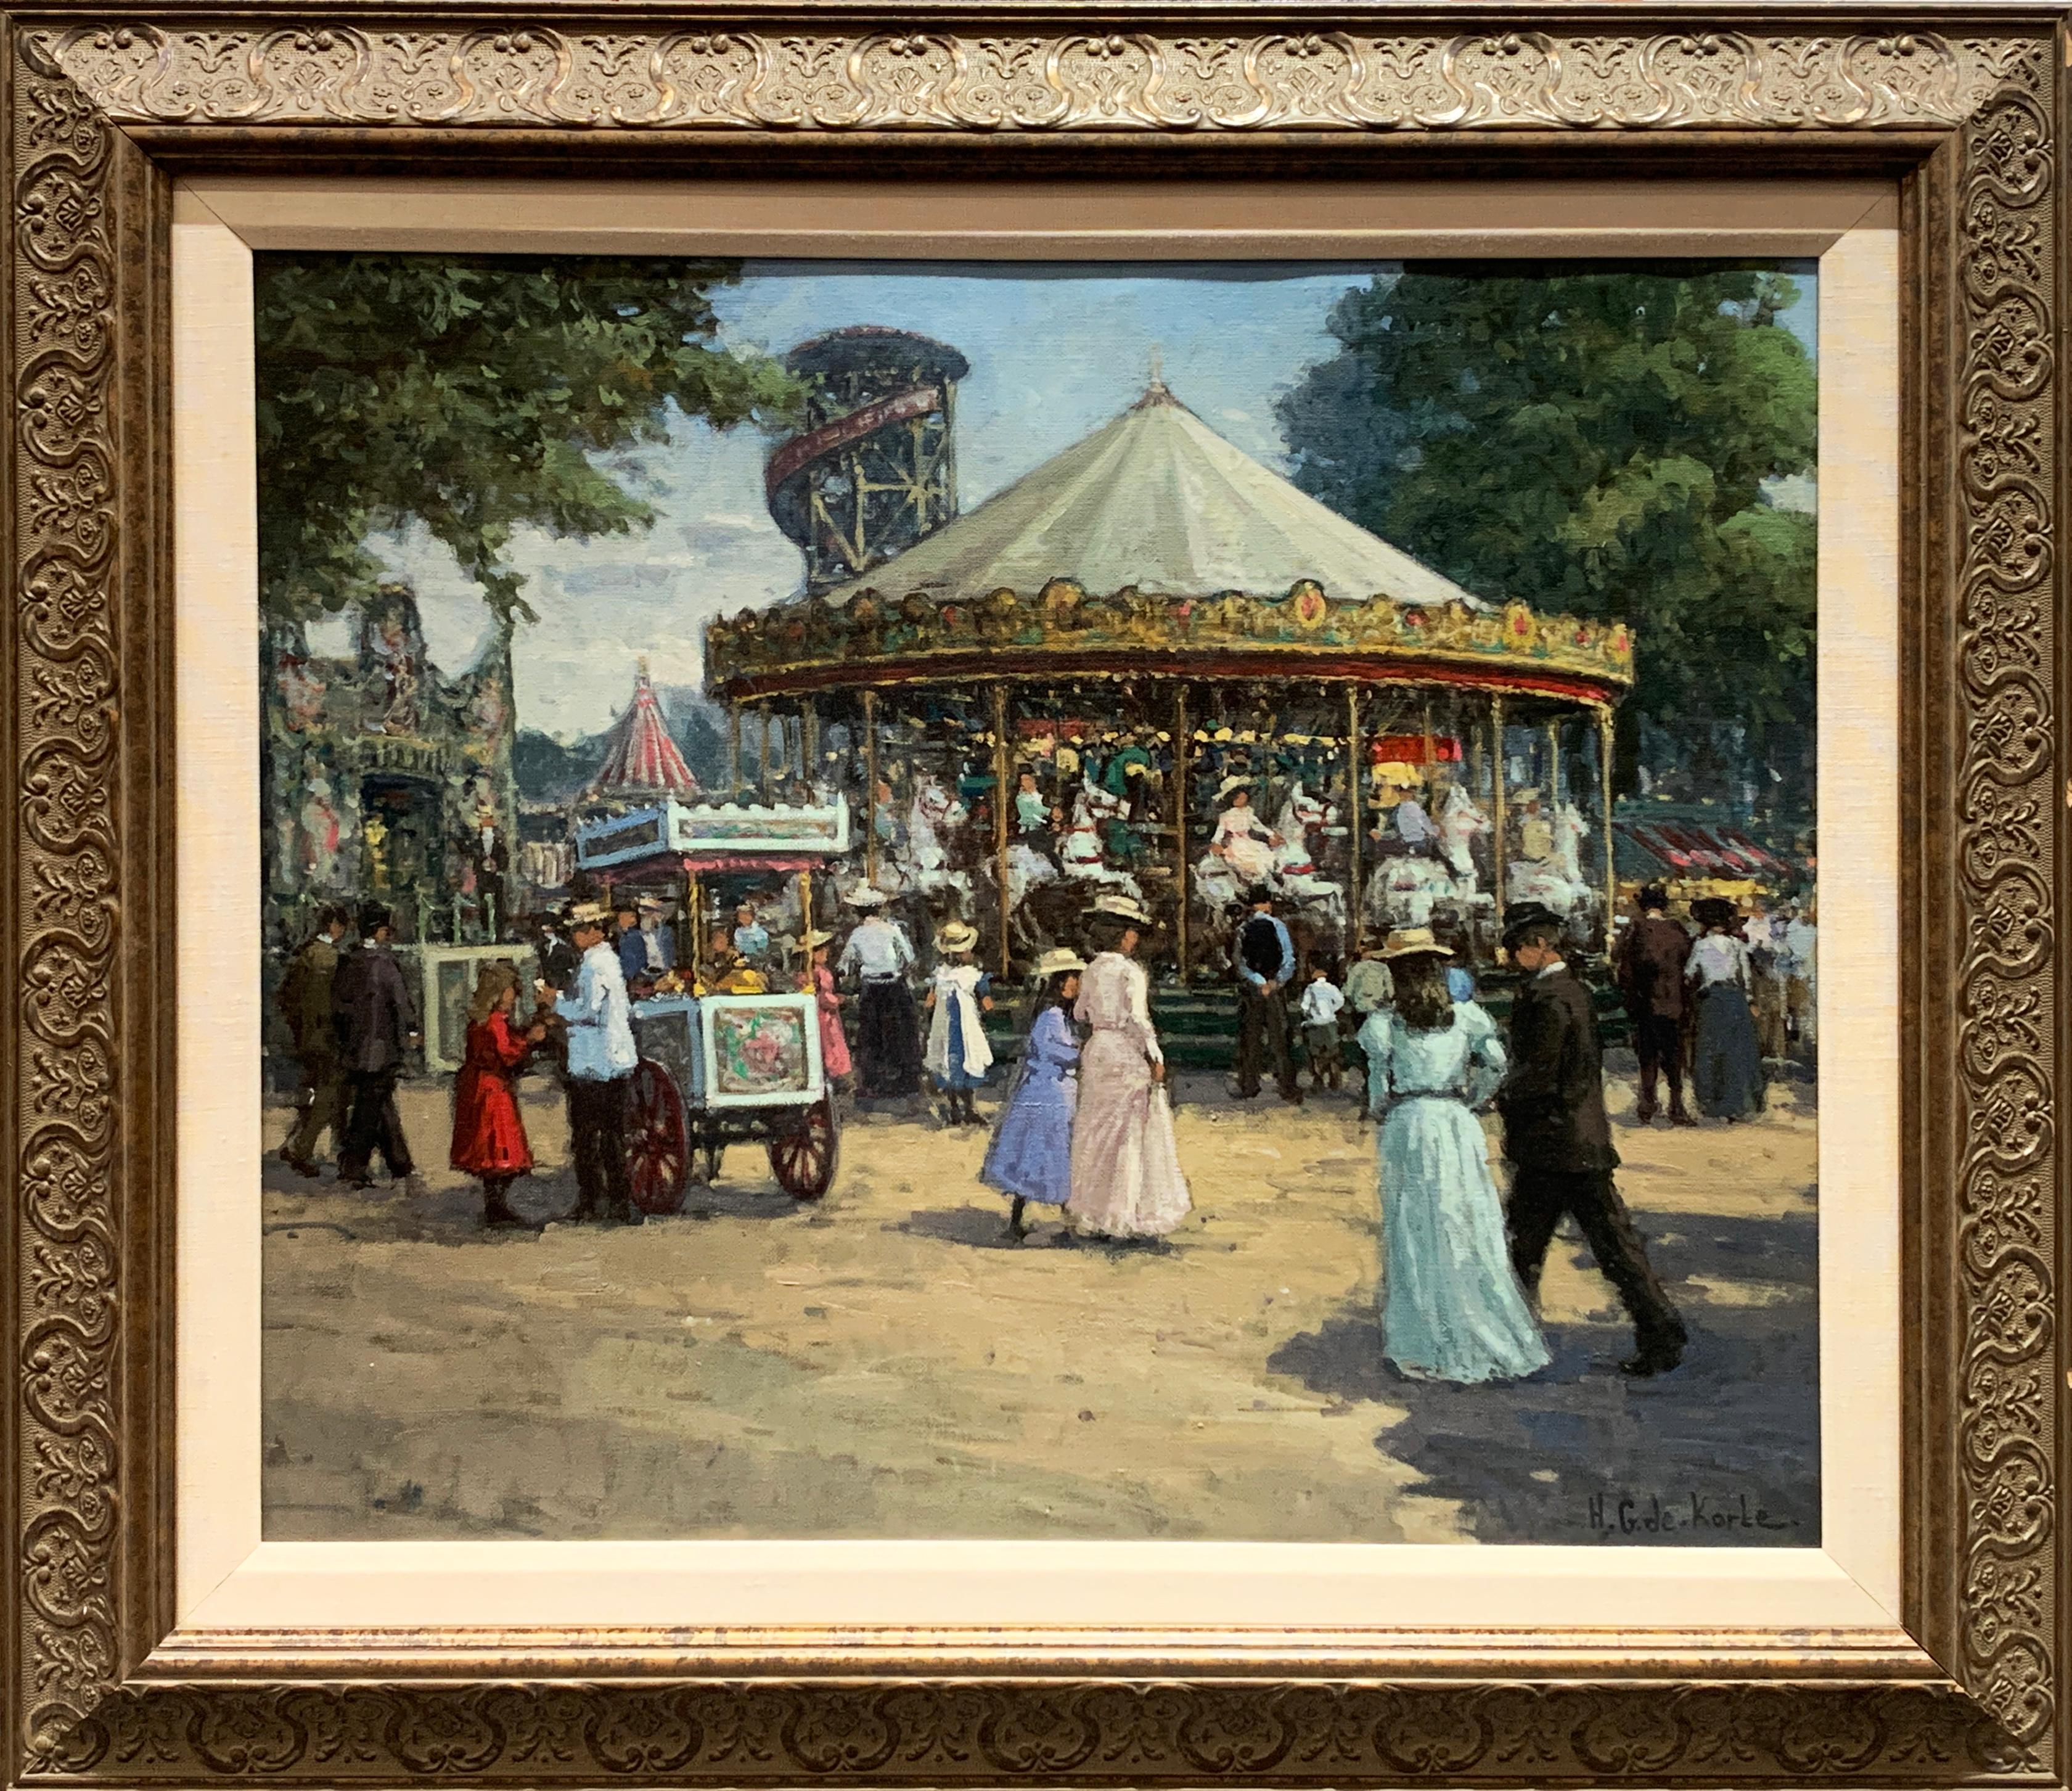 „Carousel“, Henni de Korte, 23x27 Zoll, Öl auf Leinwand, klassischer Impressionismus – Painting von H. G. de Korte